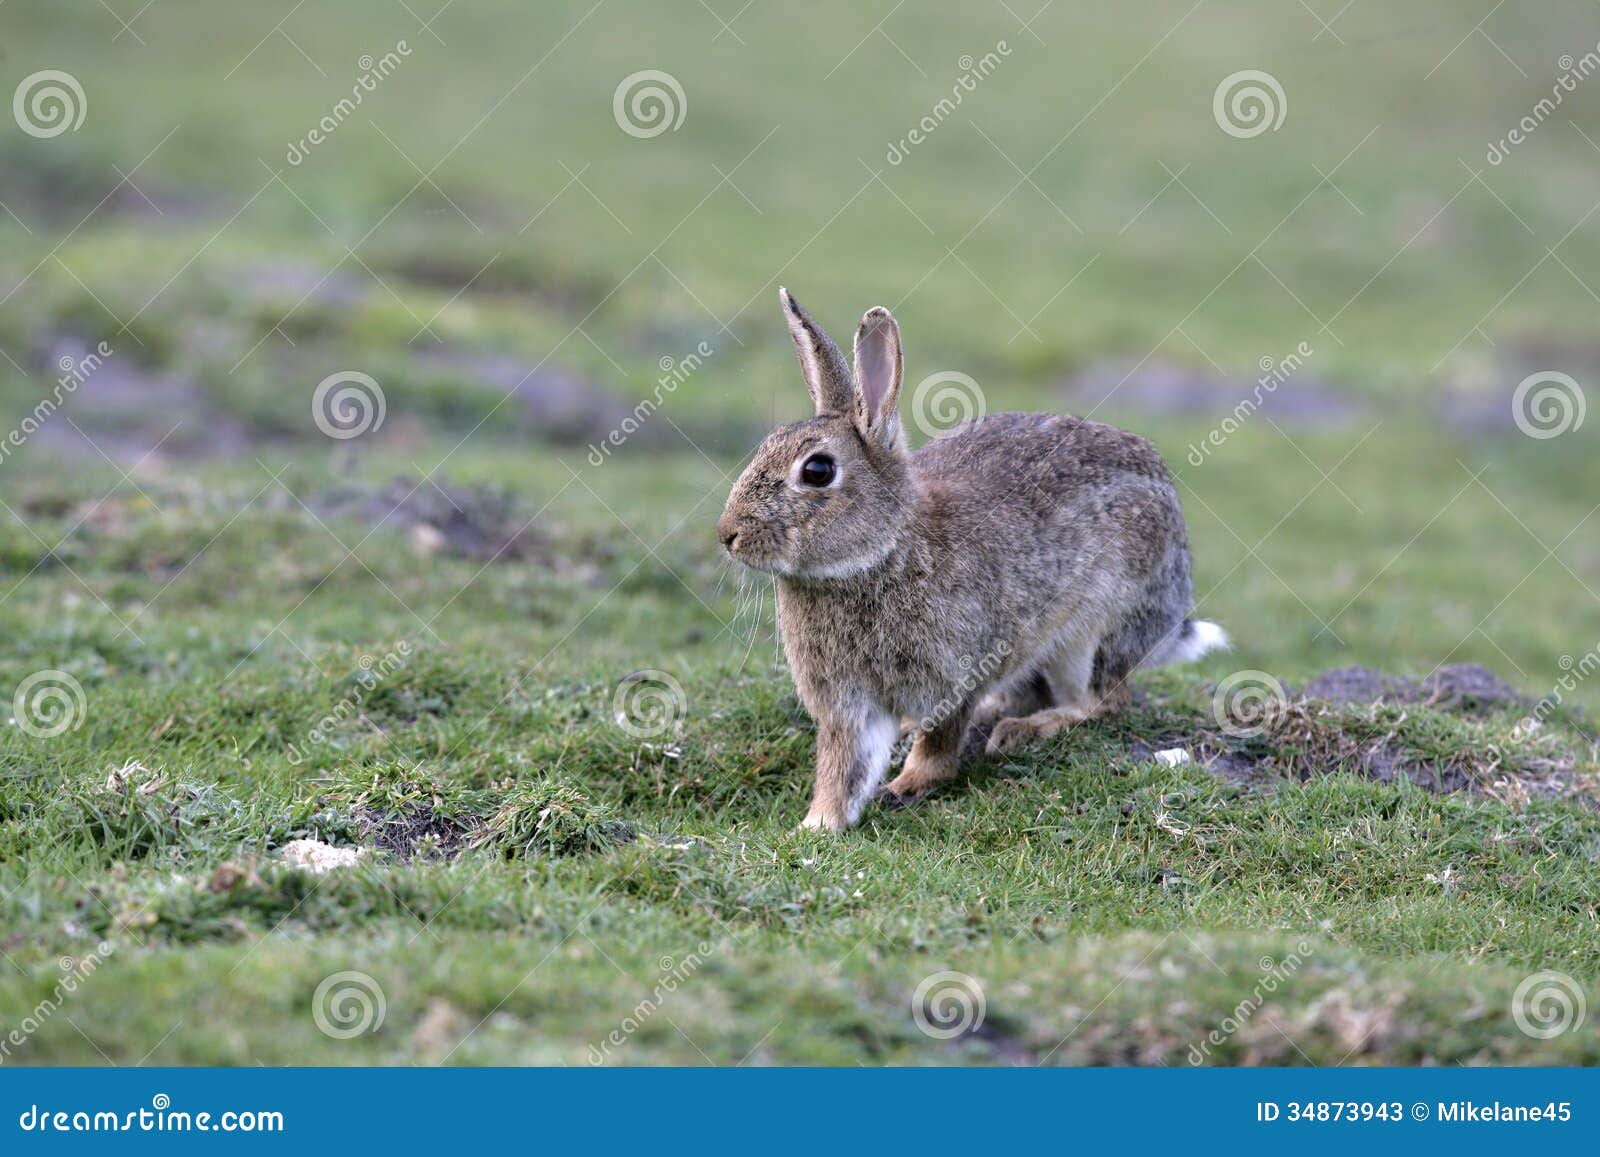 欧洲的兔子，兔子，兔子，穴兔串孔 库存图片. 图片 包括有 草甸, 逗人喜爱, 兔宝宝, 复活节, 野兔 - 110119507